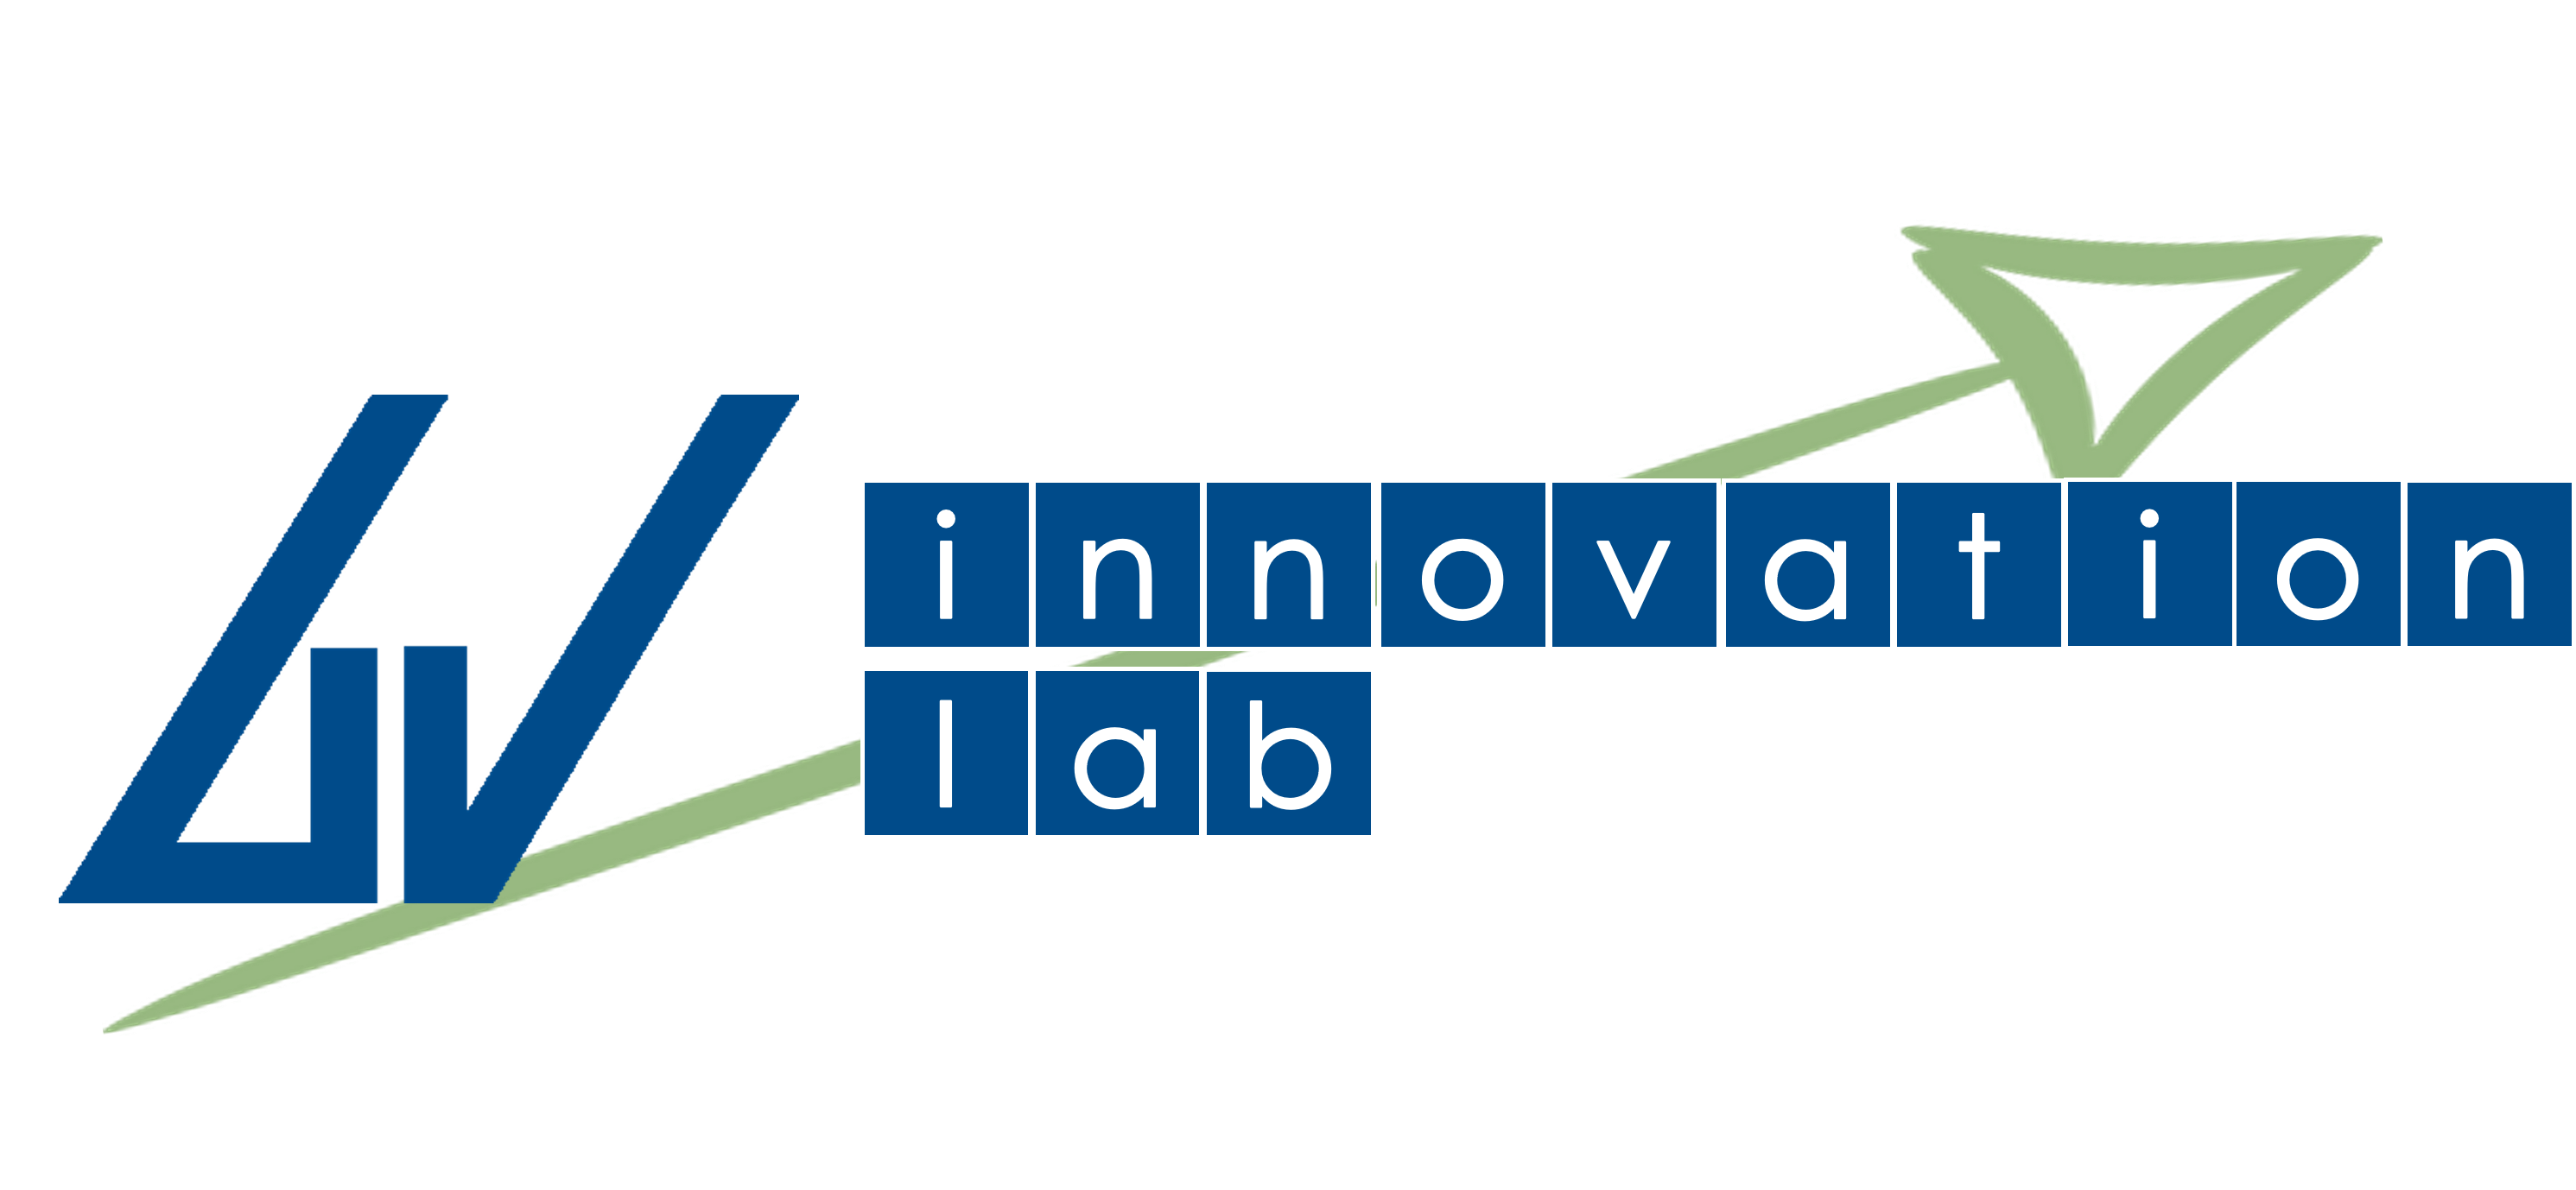 GIVI Innovation Lab